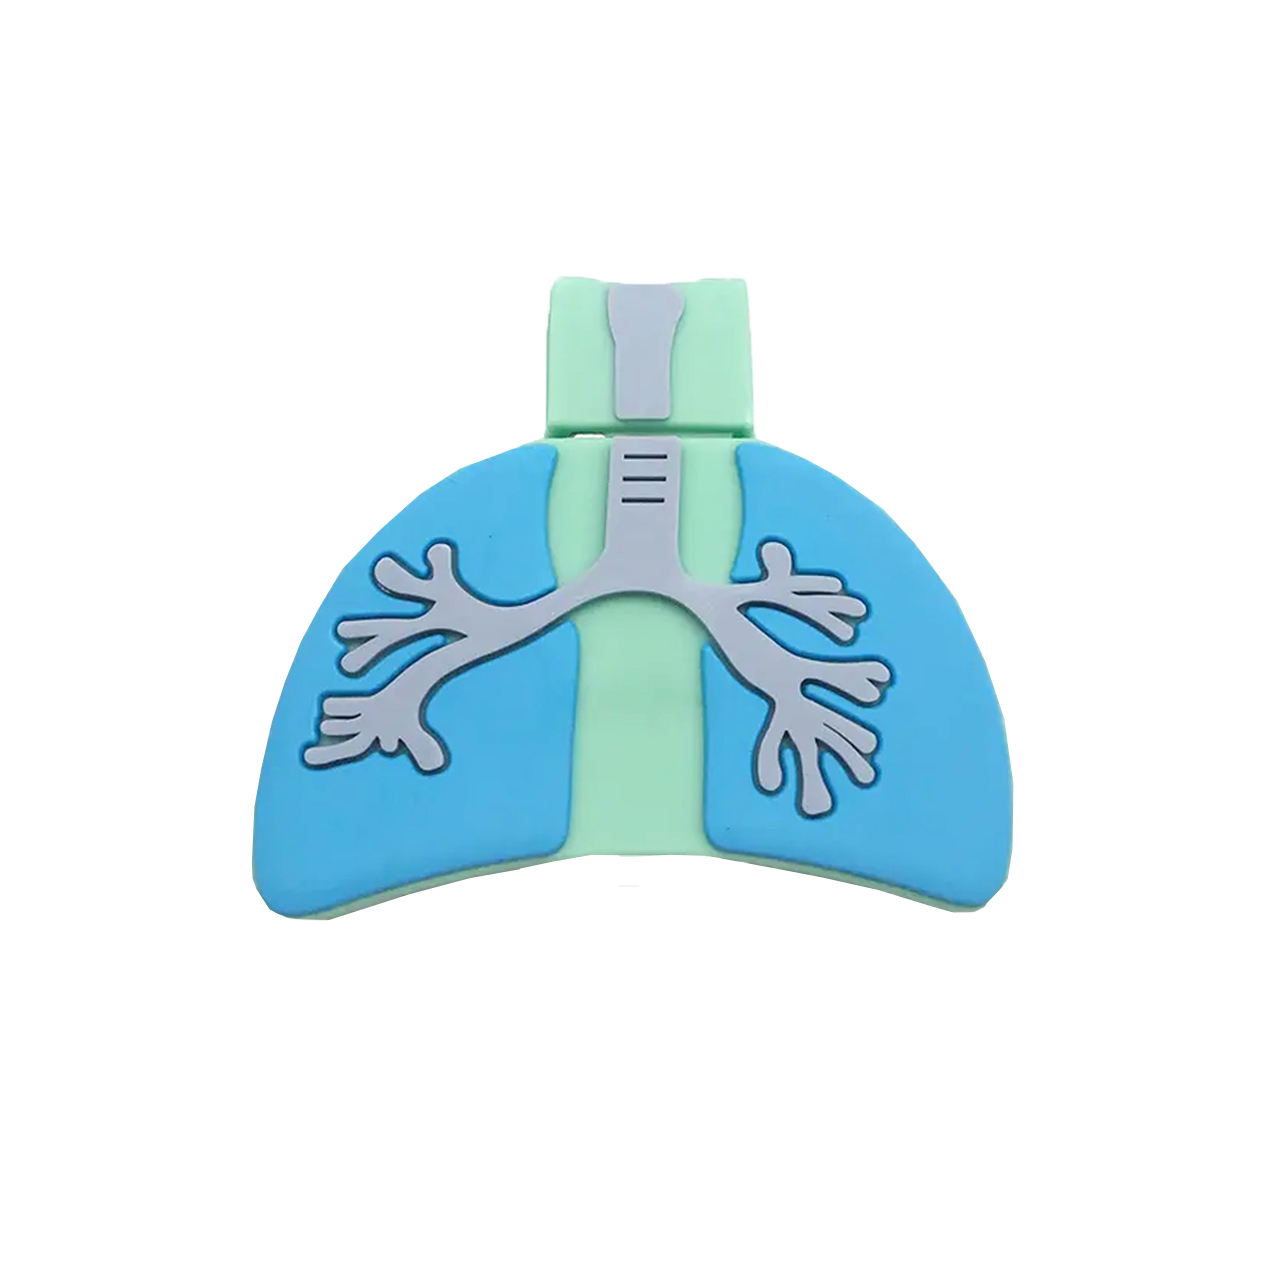 فلش مموری دایا دیتا طرح Lungs مدل PF1101 ظرفیت 64 گیگابایت